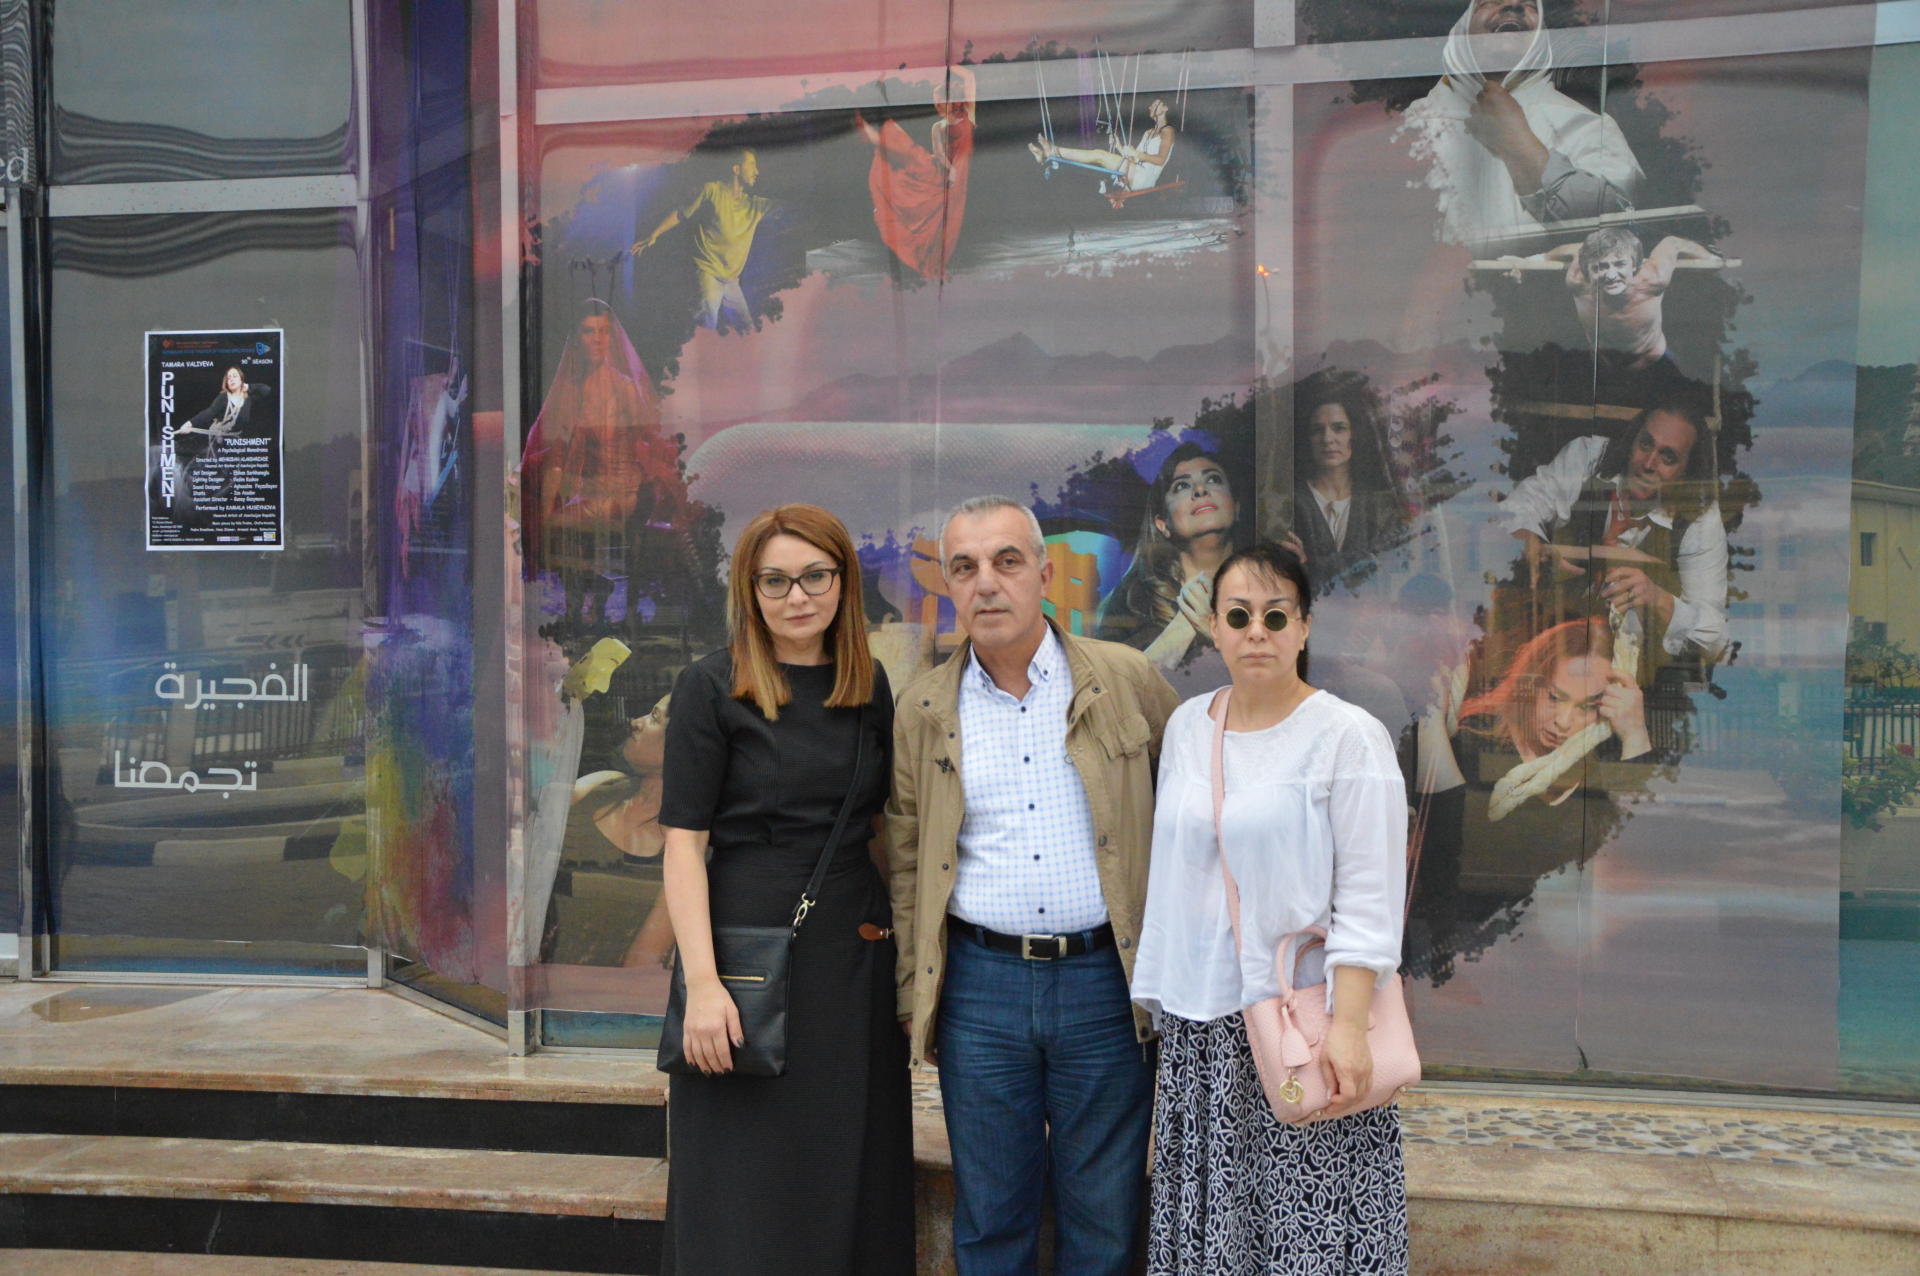 Azərbaycanlı aktyorlar dünya turundan qayıdıb (FOTO) - Gallery Image